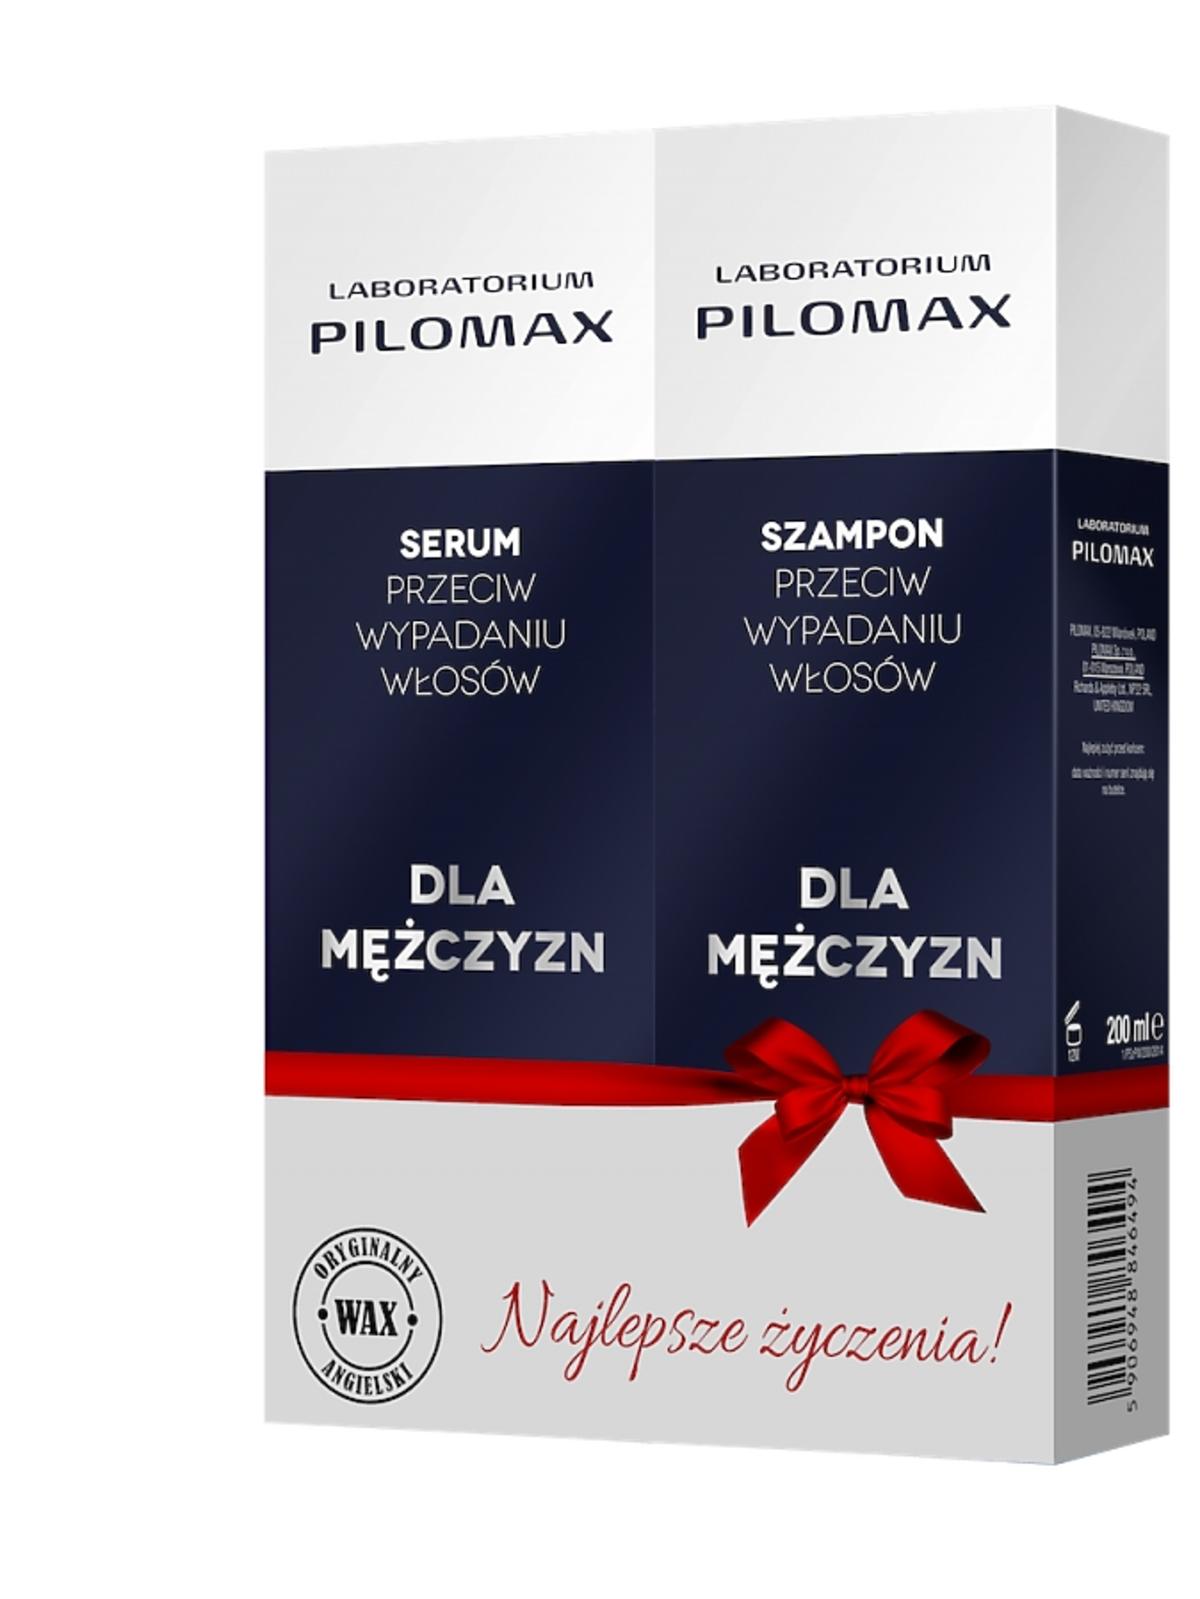 zestaw kosmetyków Szampon + Serum przeciw wypadaniu włosów dla mężczyzn Pilomax, 89 zł